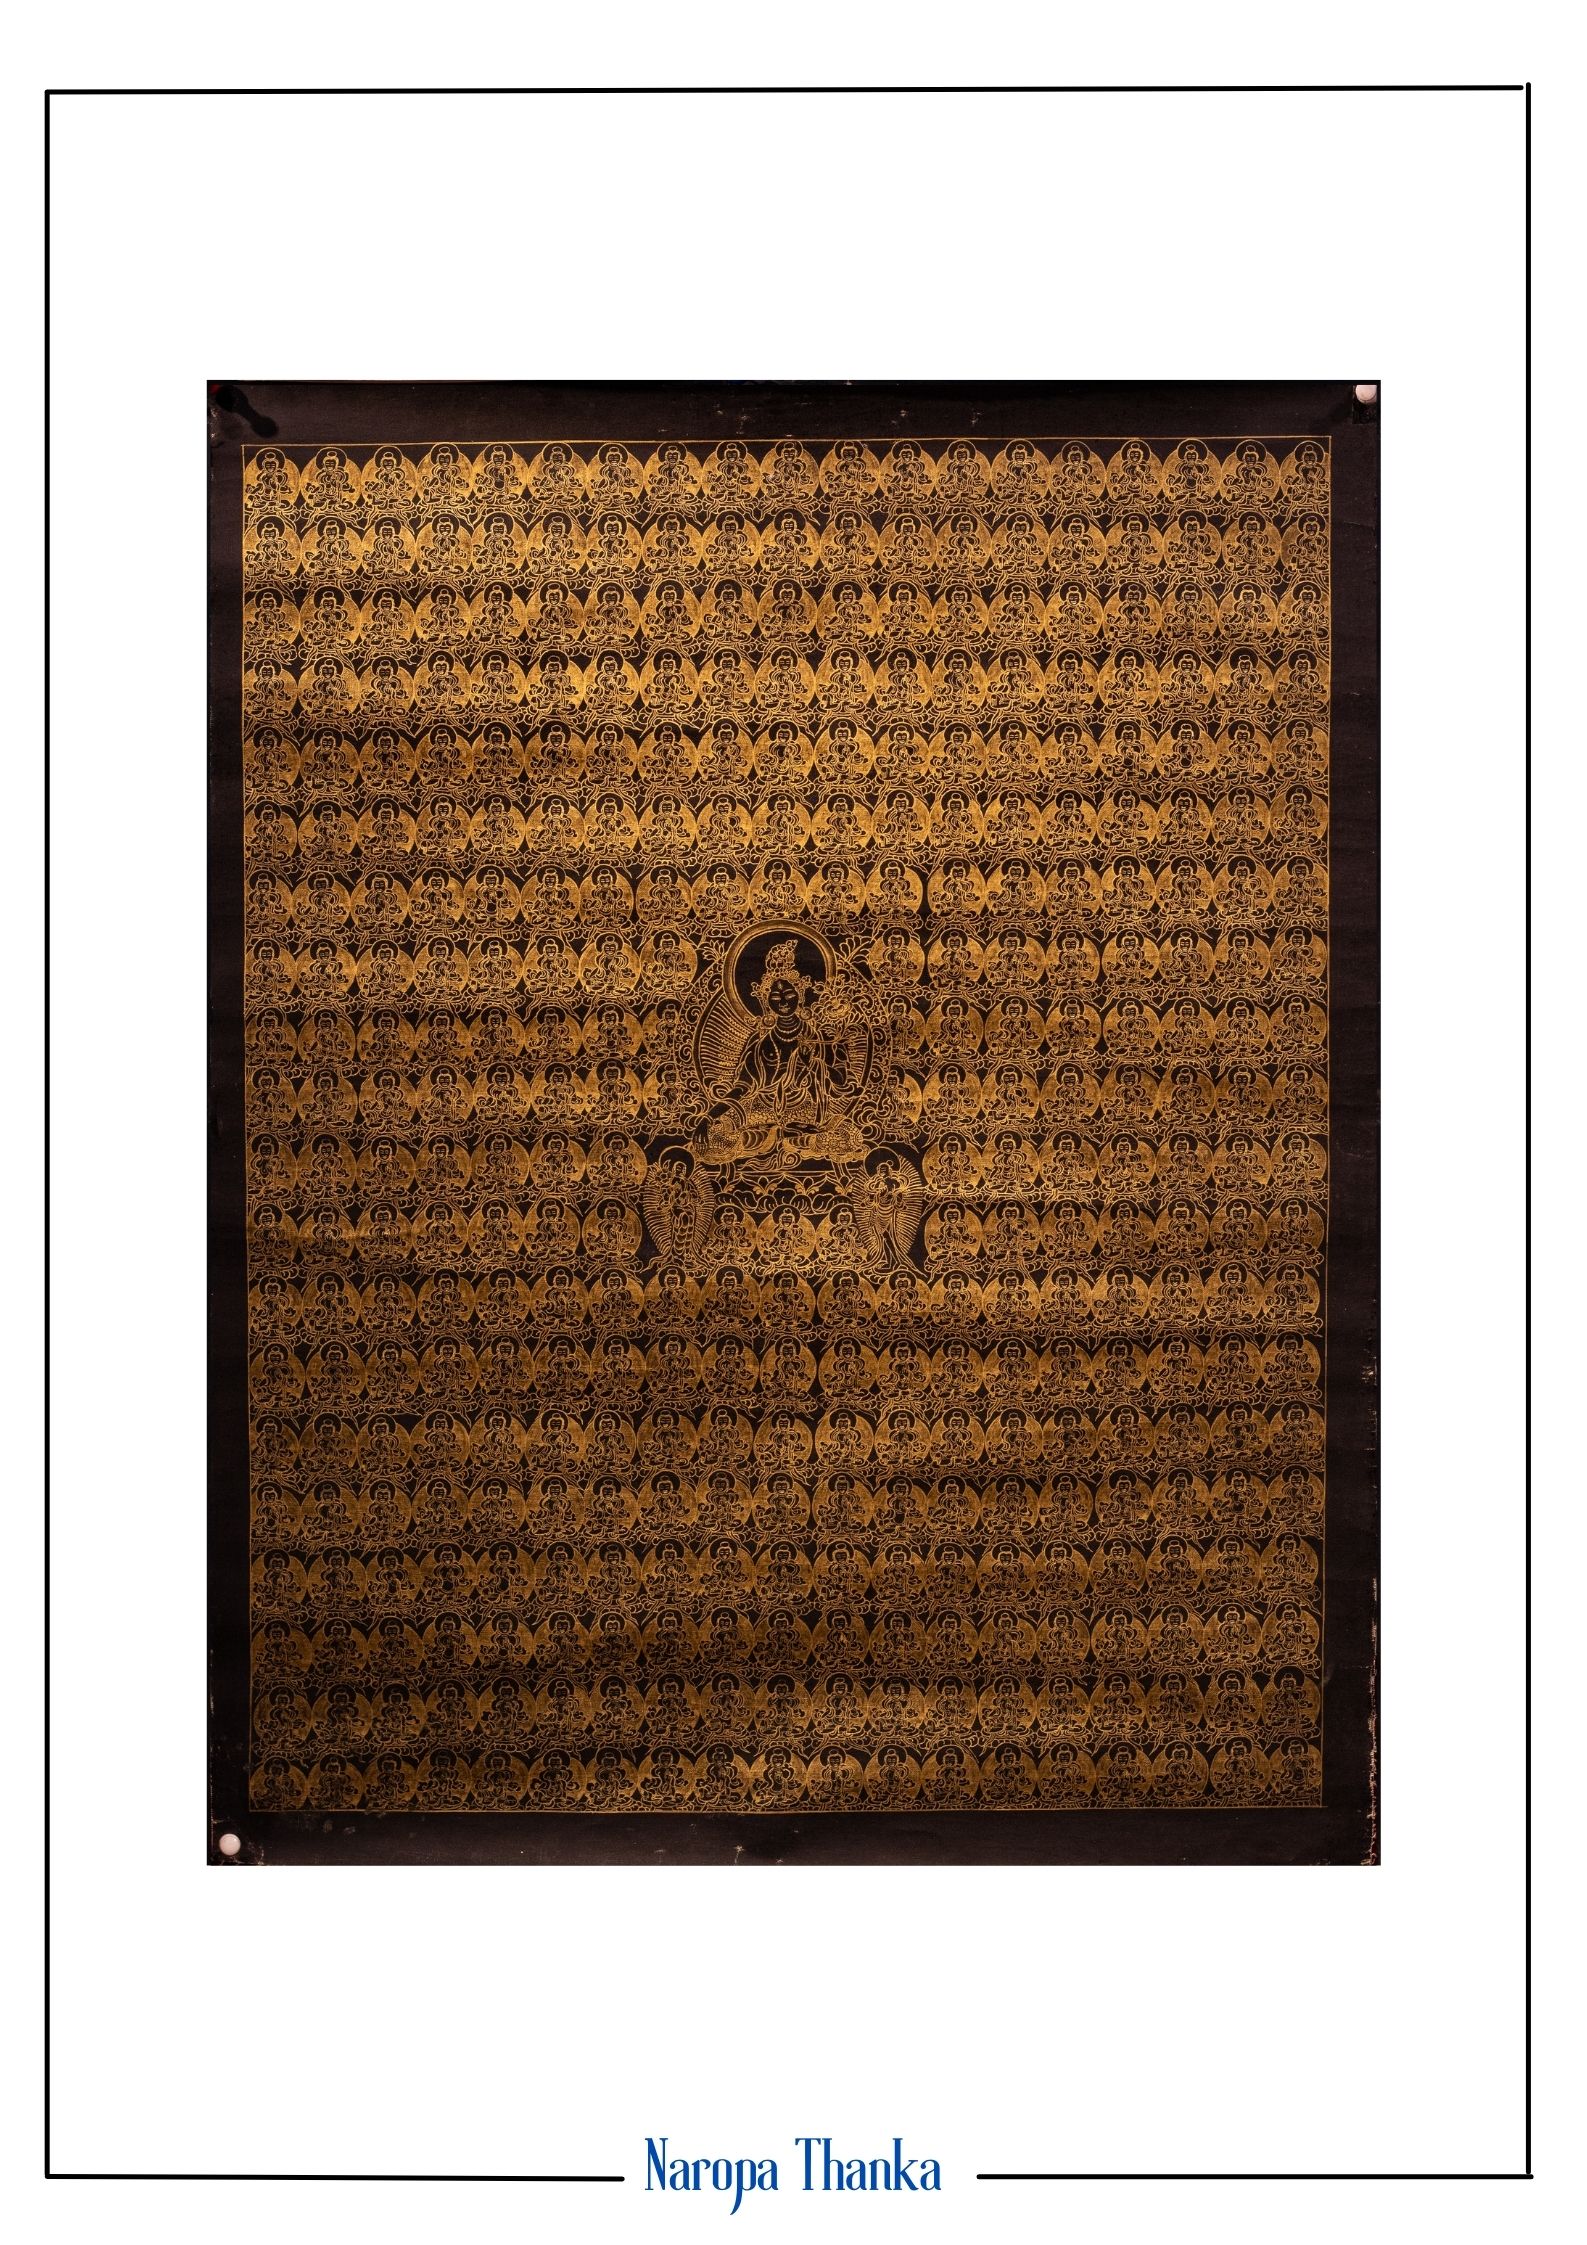 365 Black and Gold White Tara, 24k Gold Painting, Tibetan Thangka 51*40cm